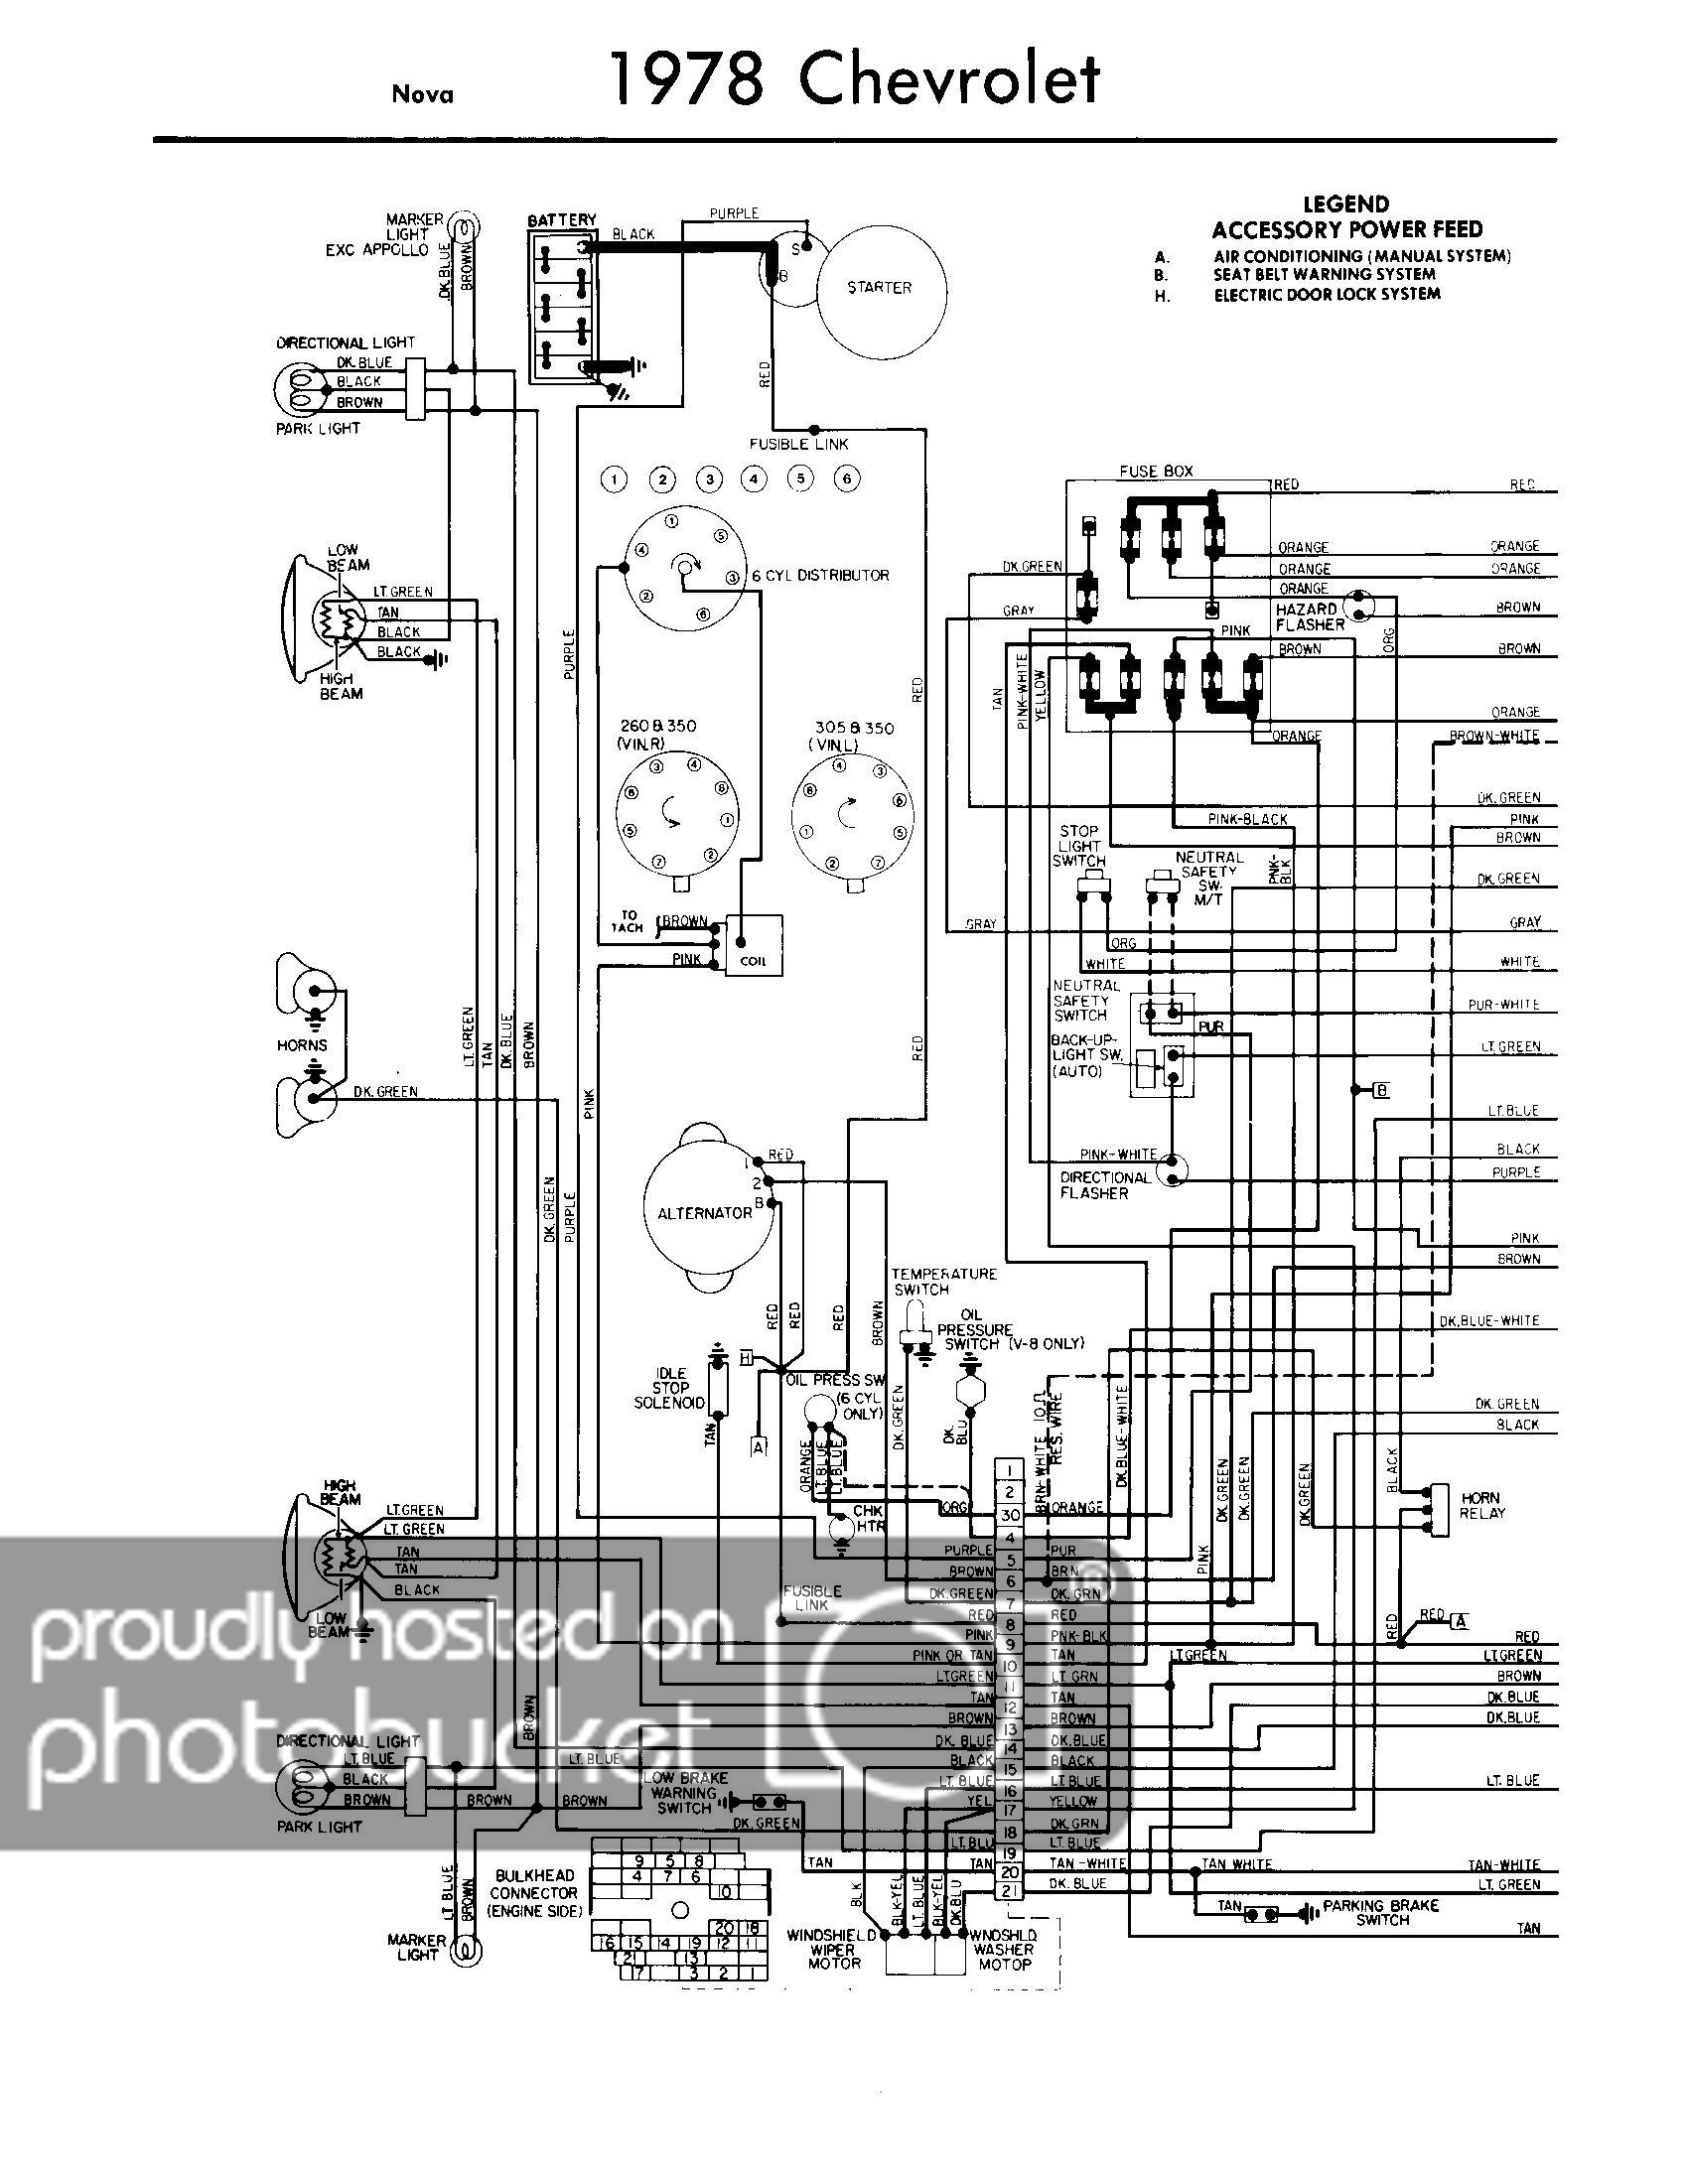 1973 Sbc Starter Wiring - Wiring Diagram Data - Chevy 4 Wire Alternator Wiring Diagram